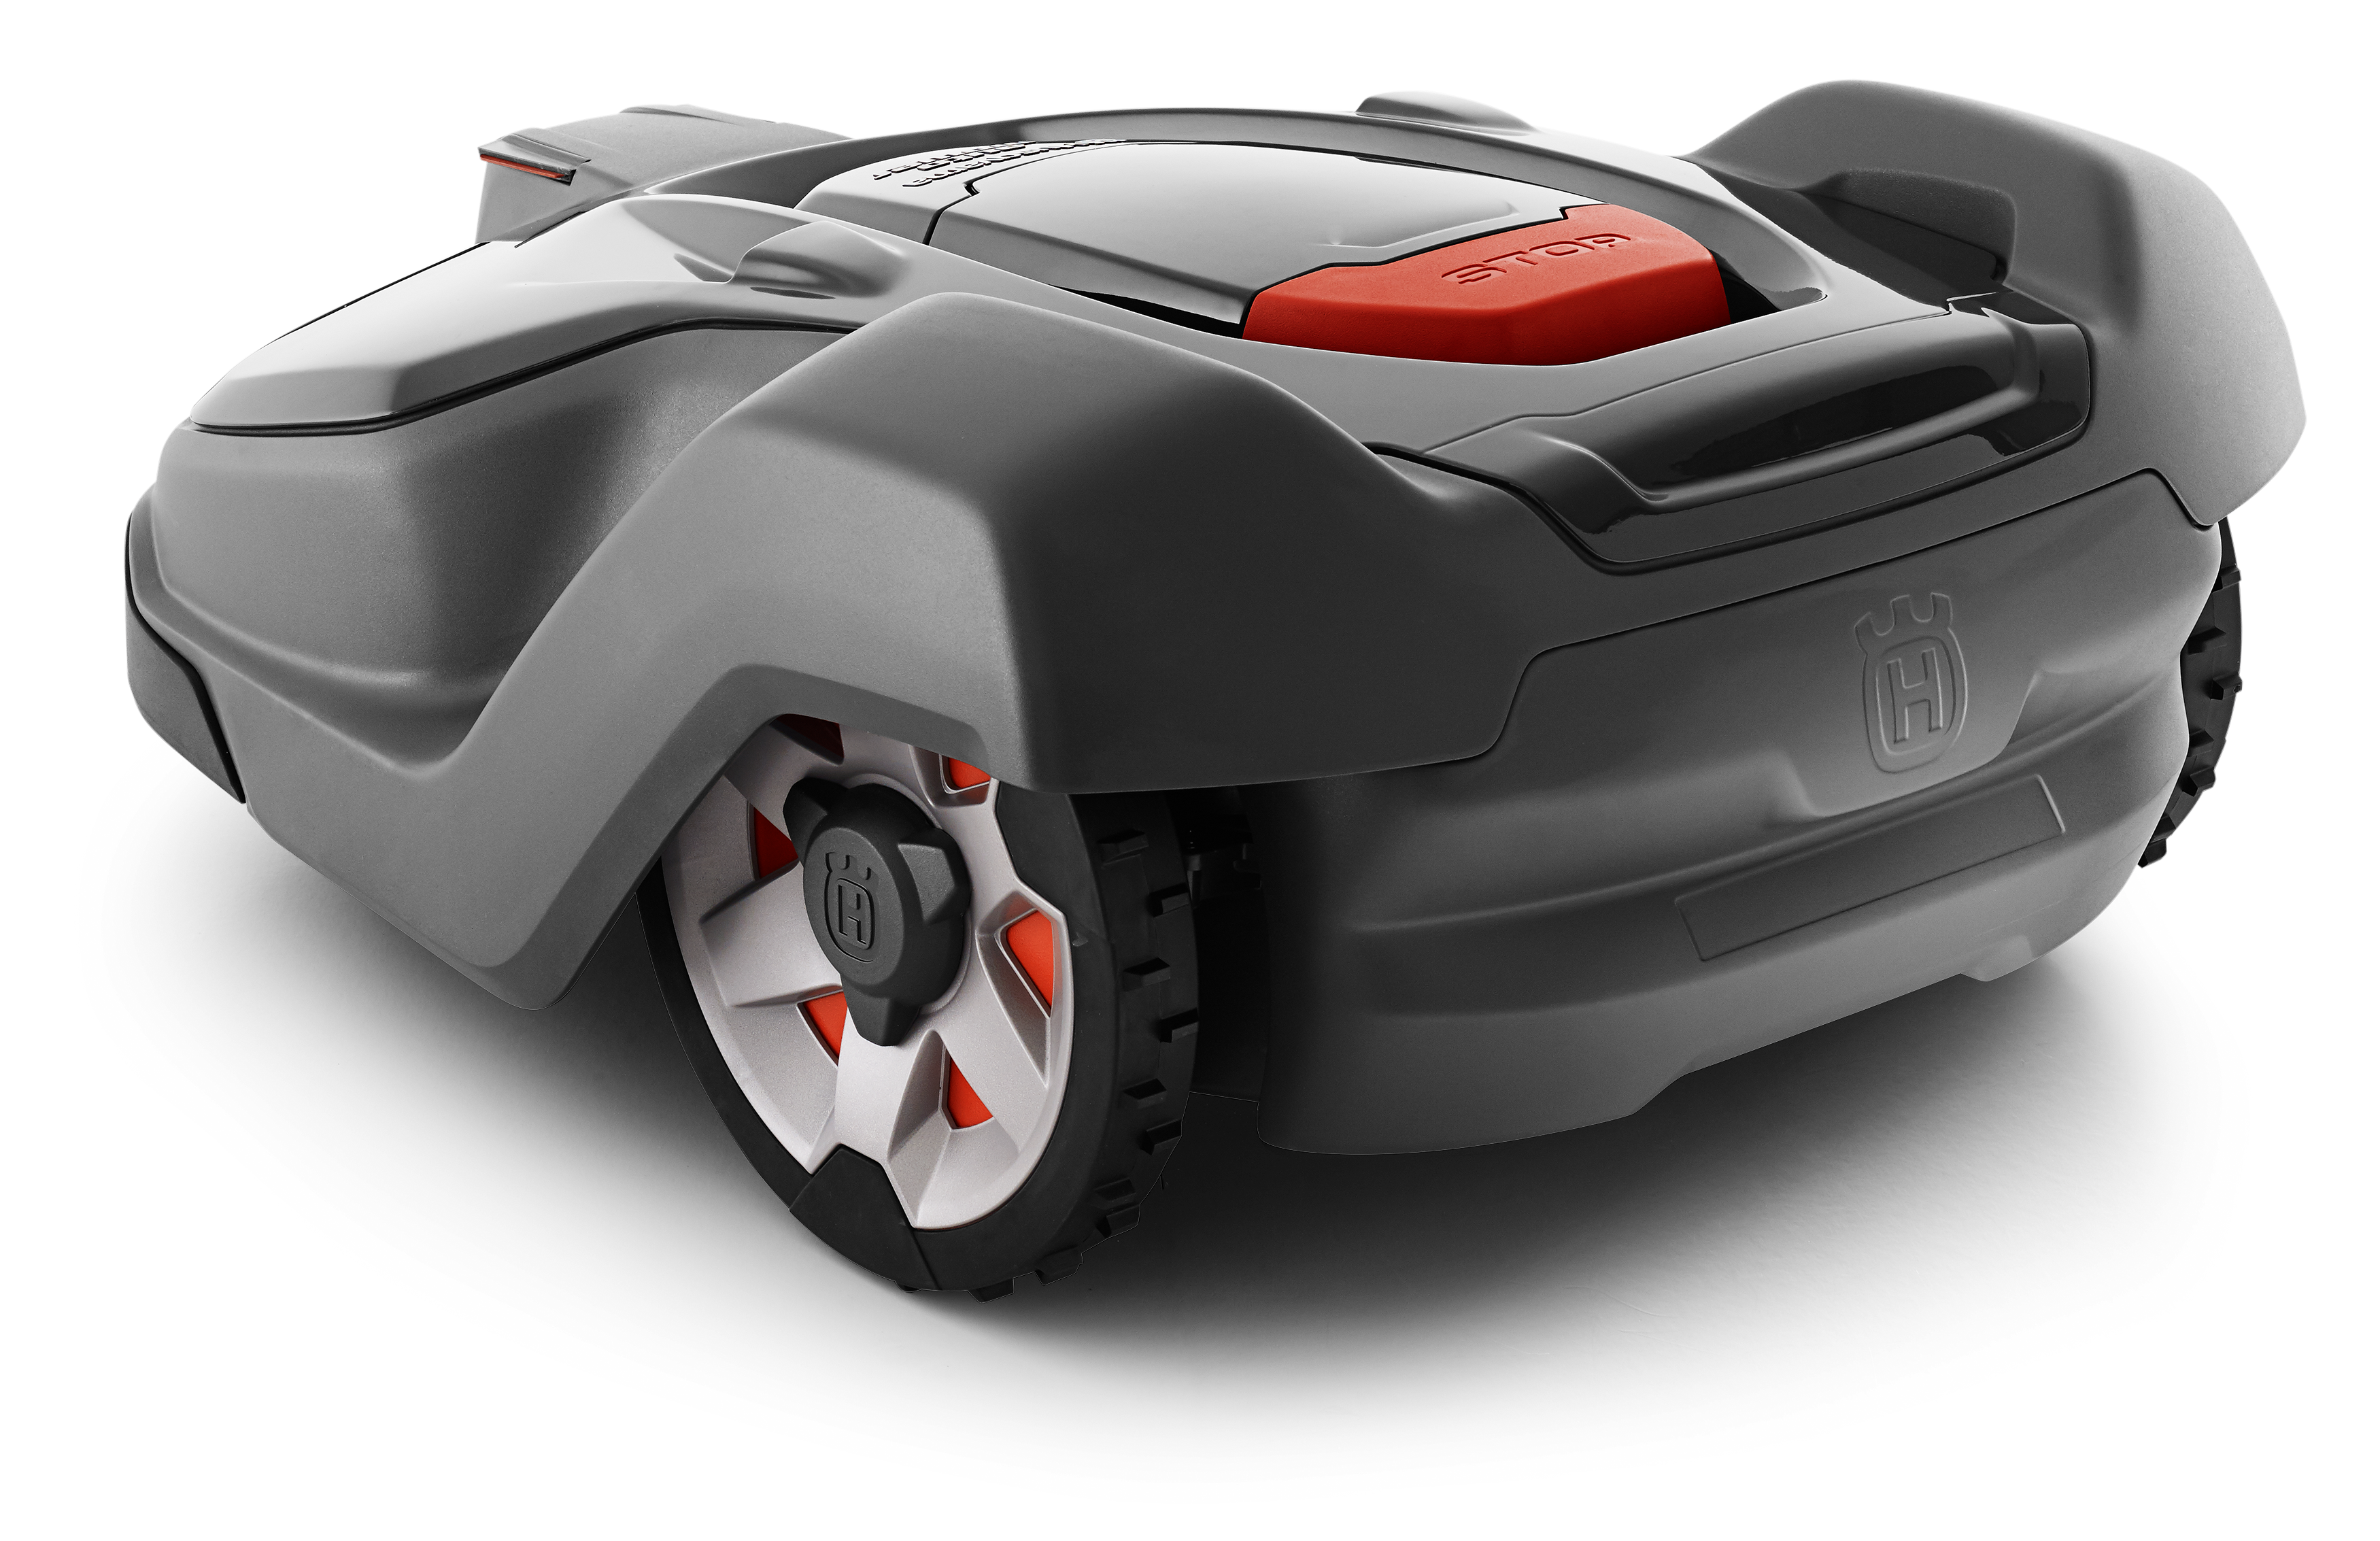 Melns Husqvarna Automower zāles pļāvējs robots, 450X modelis, skats no aizmugures